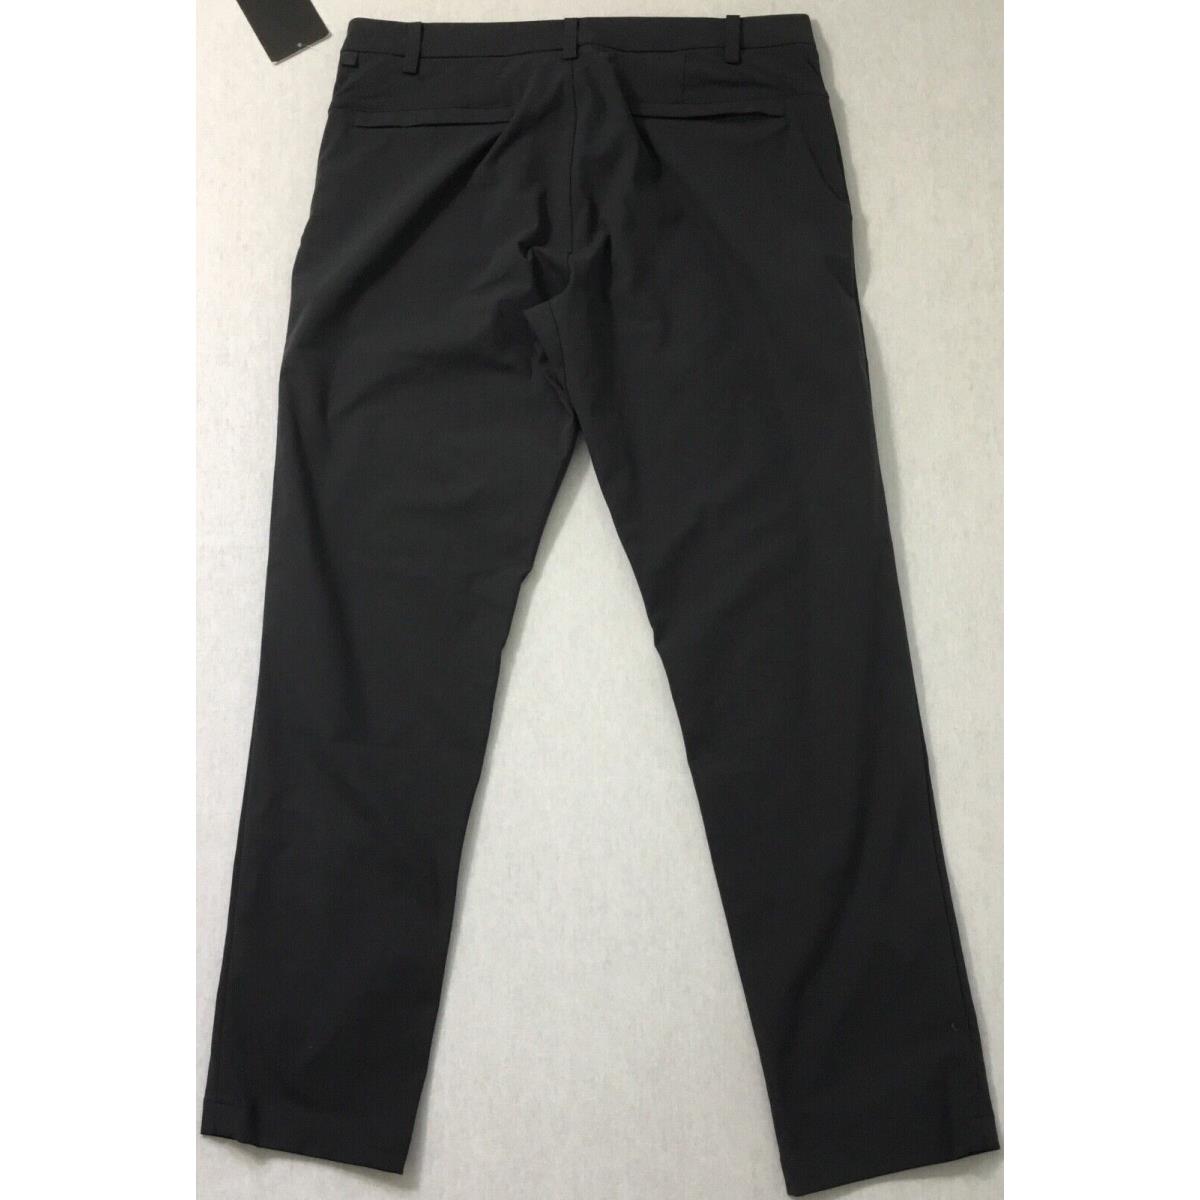 Lululemon Men s Pants Commission Pant Classic 32 Length LM5710S Obsi Size 32